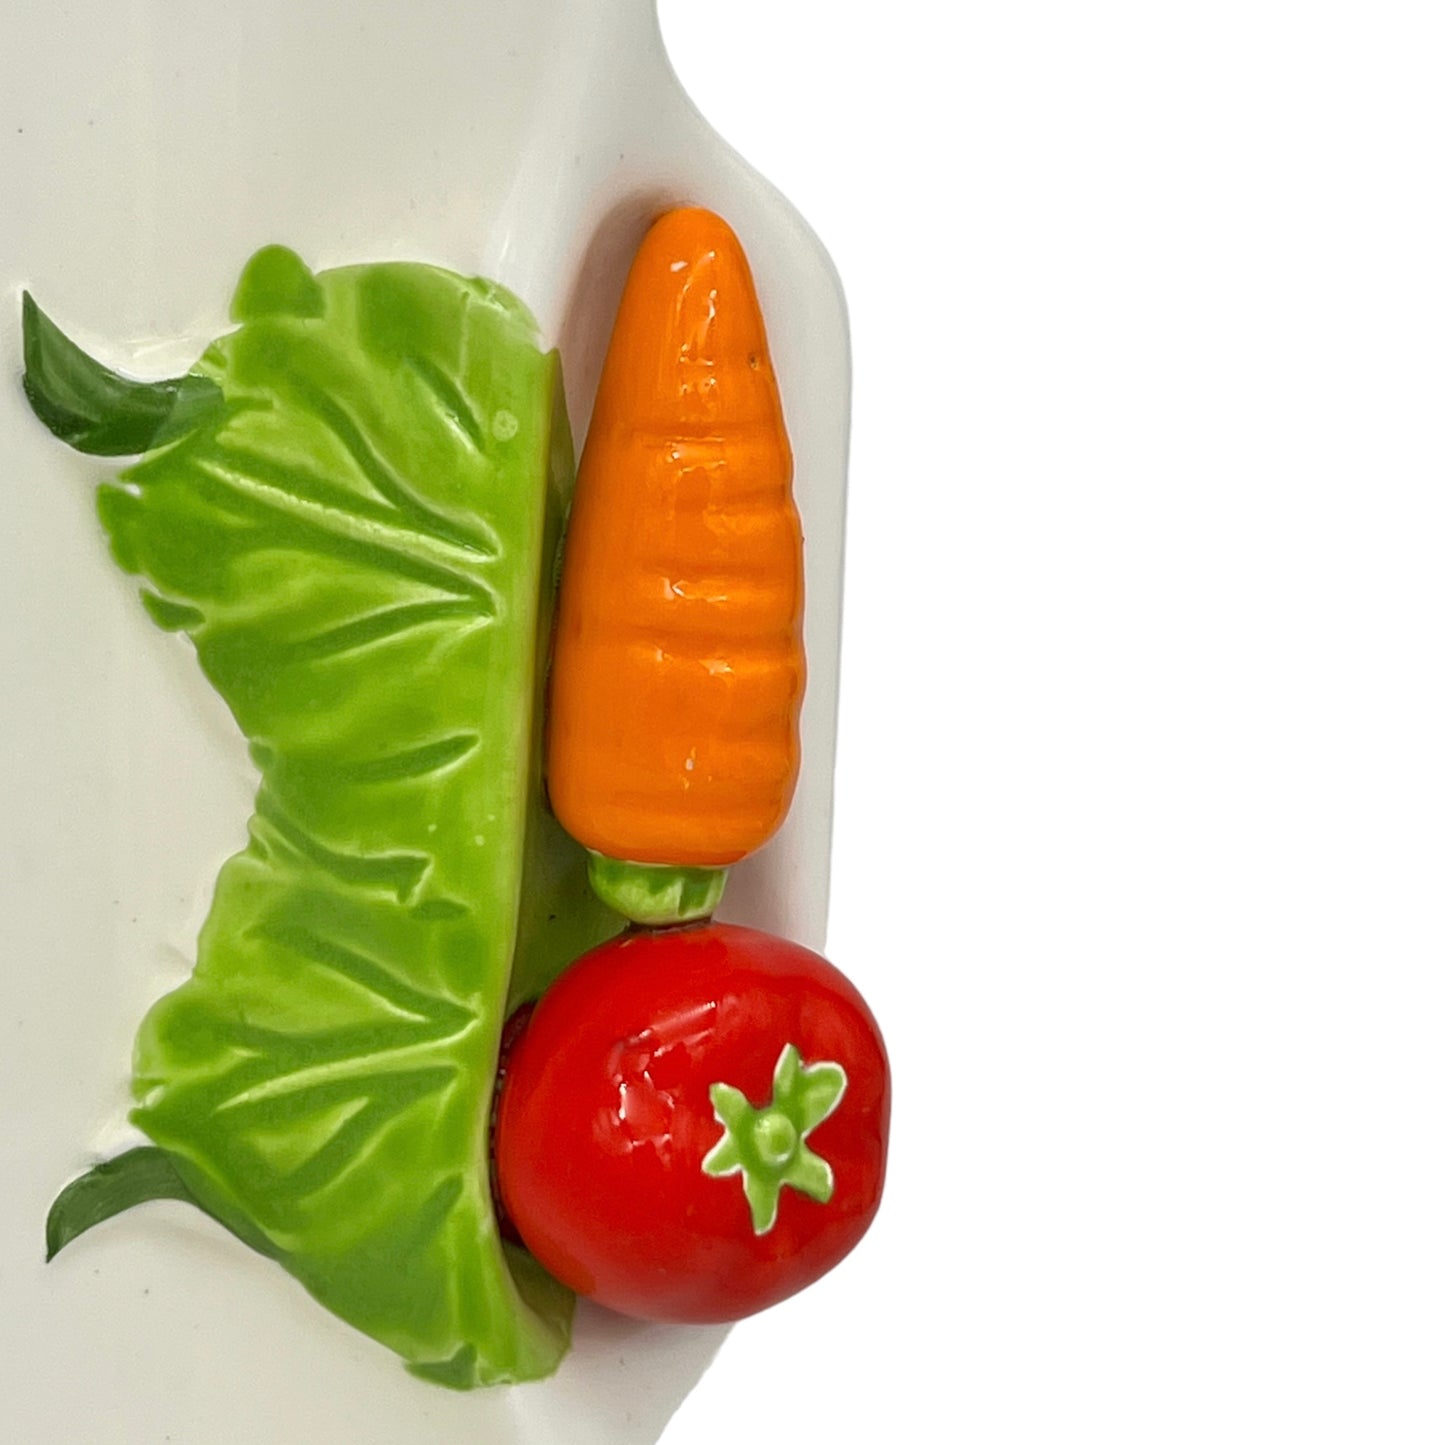 image French ceramic vegetable platter